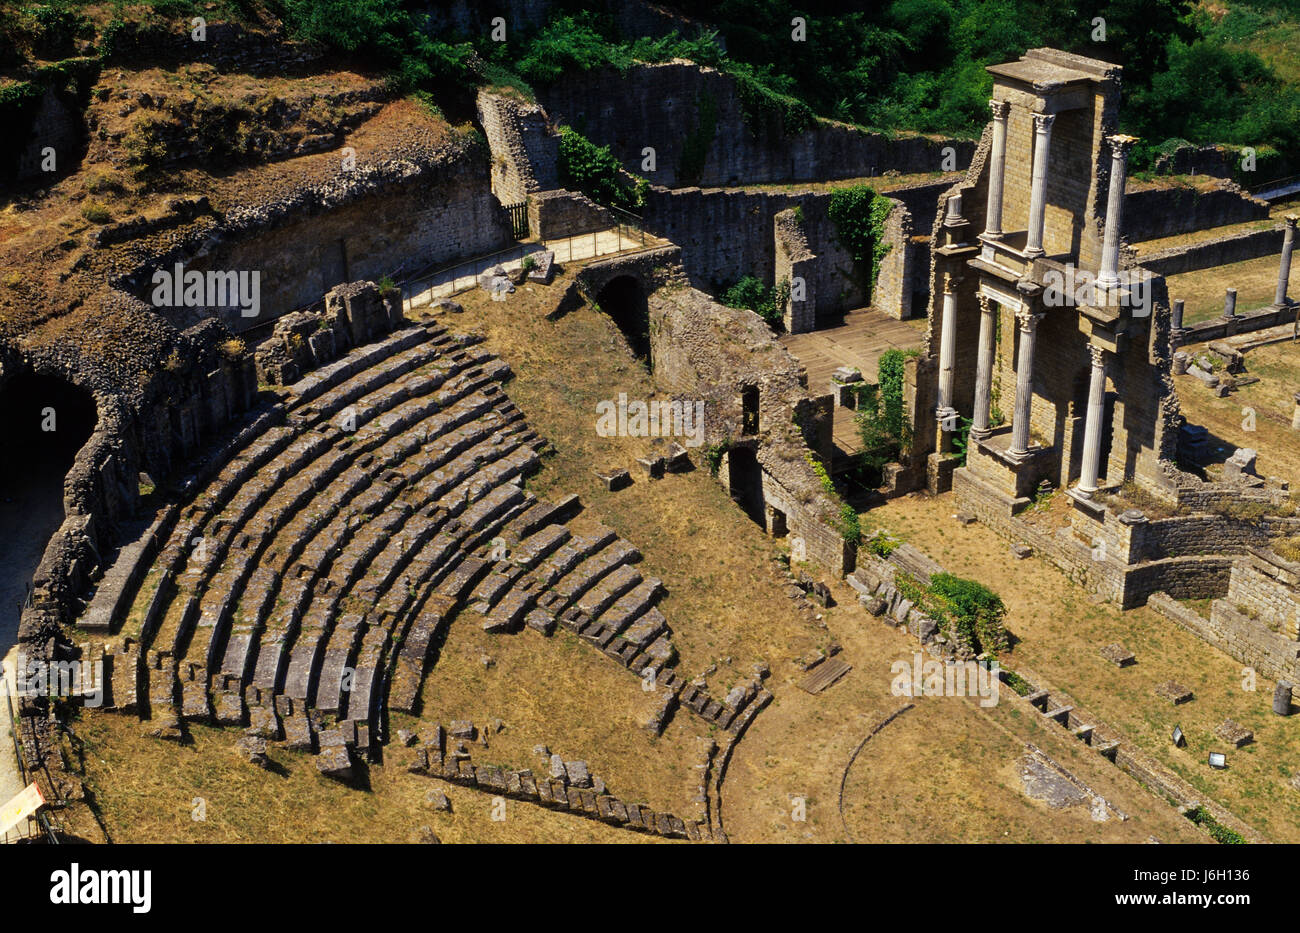 Toskana Ruine antike Italien Amphitheater Amphitheater Toskana Toscana Ruine Stockfoto